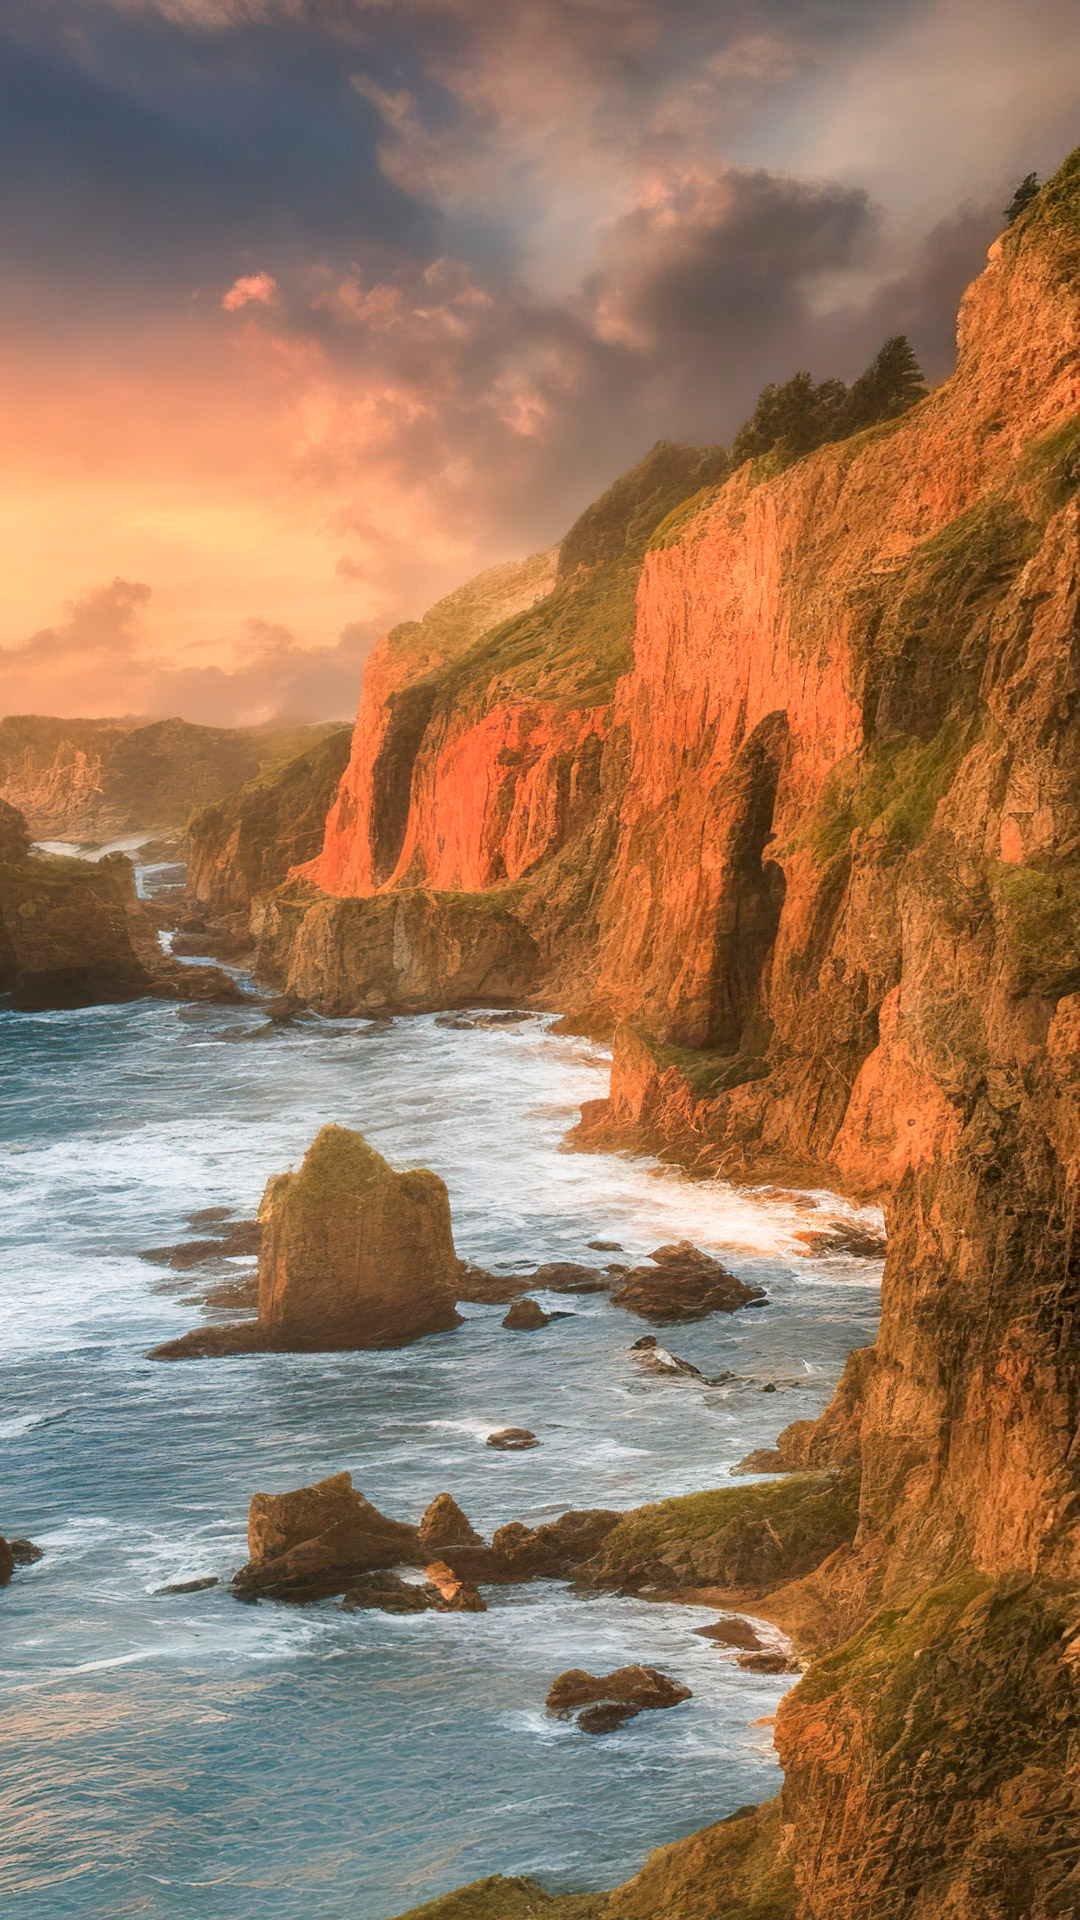 Téléchargez notre fond d'écran de nature pour Android en HD 1080p, présentant une vue côtière époustouflante avec des falaises rugueuses, des vagues déferlantes et un coucher de soleil enflammé.